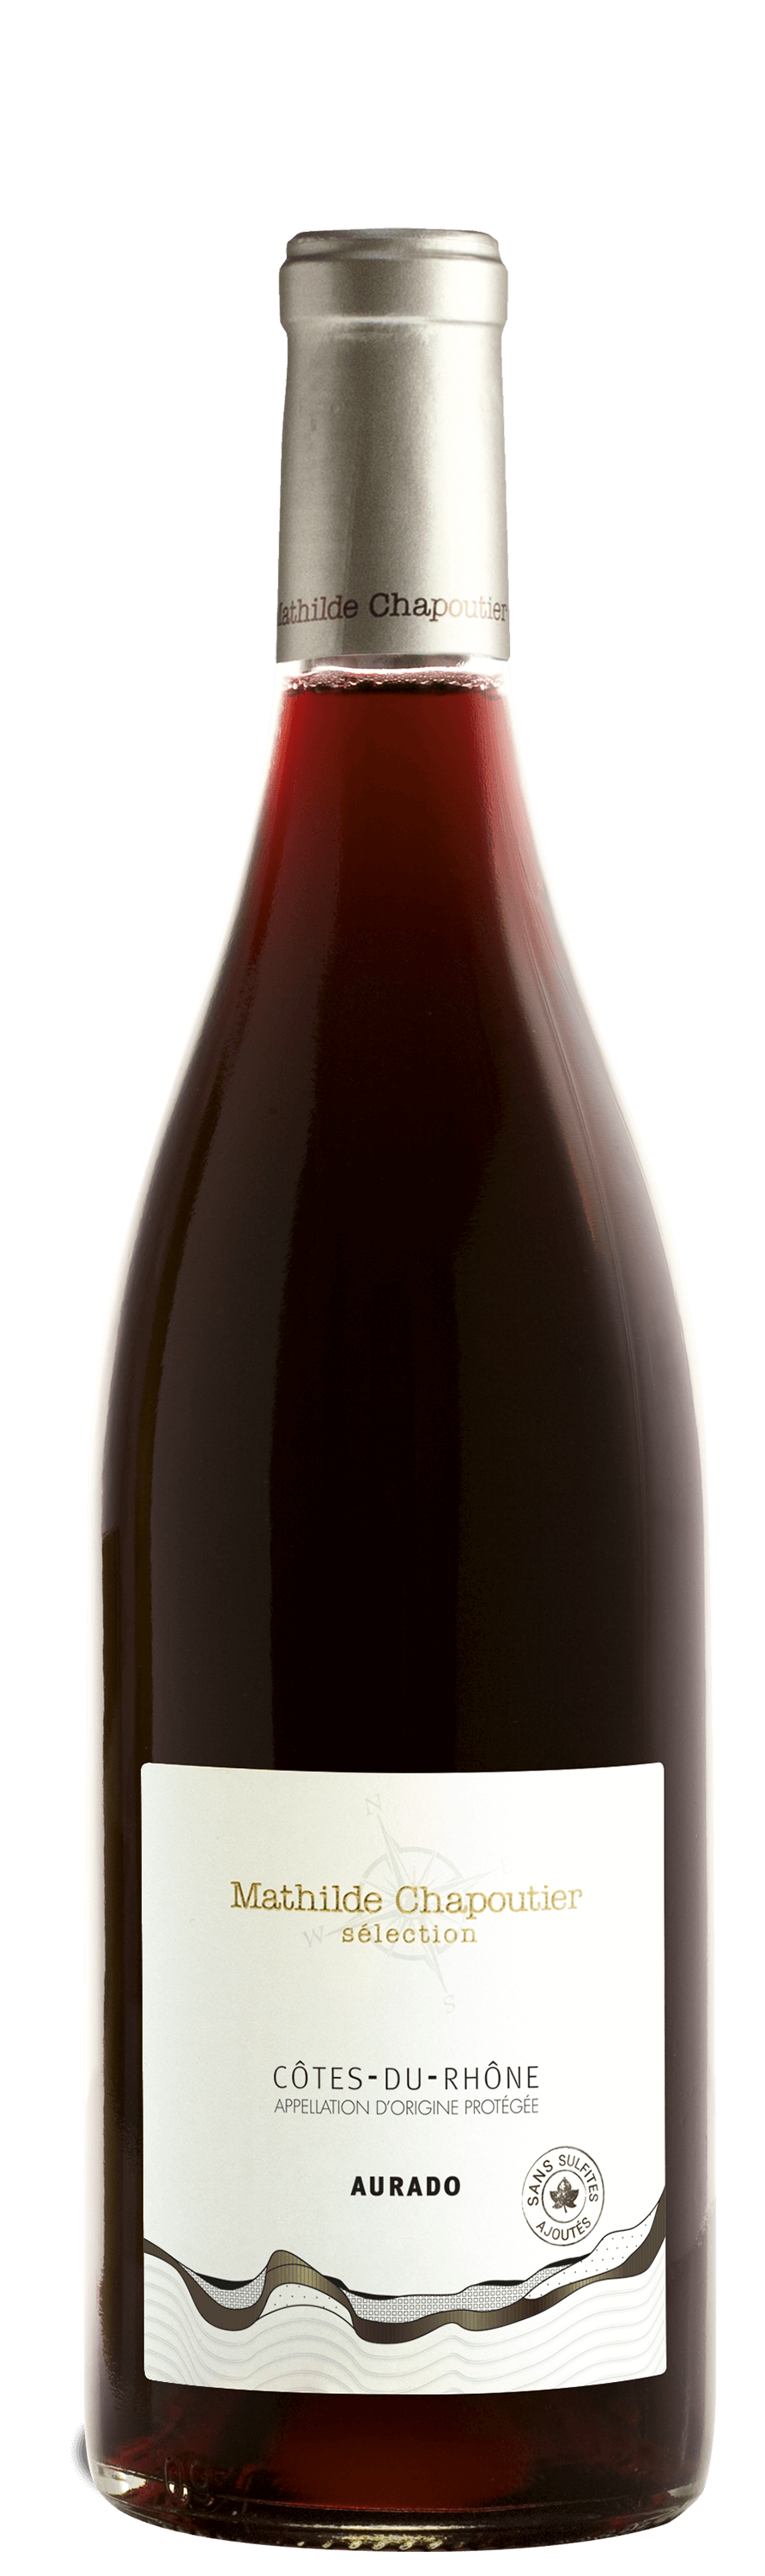 Côtes-du-Rhône sans sulfites, vin rouge Mathilde Chapoutier Sélection